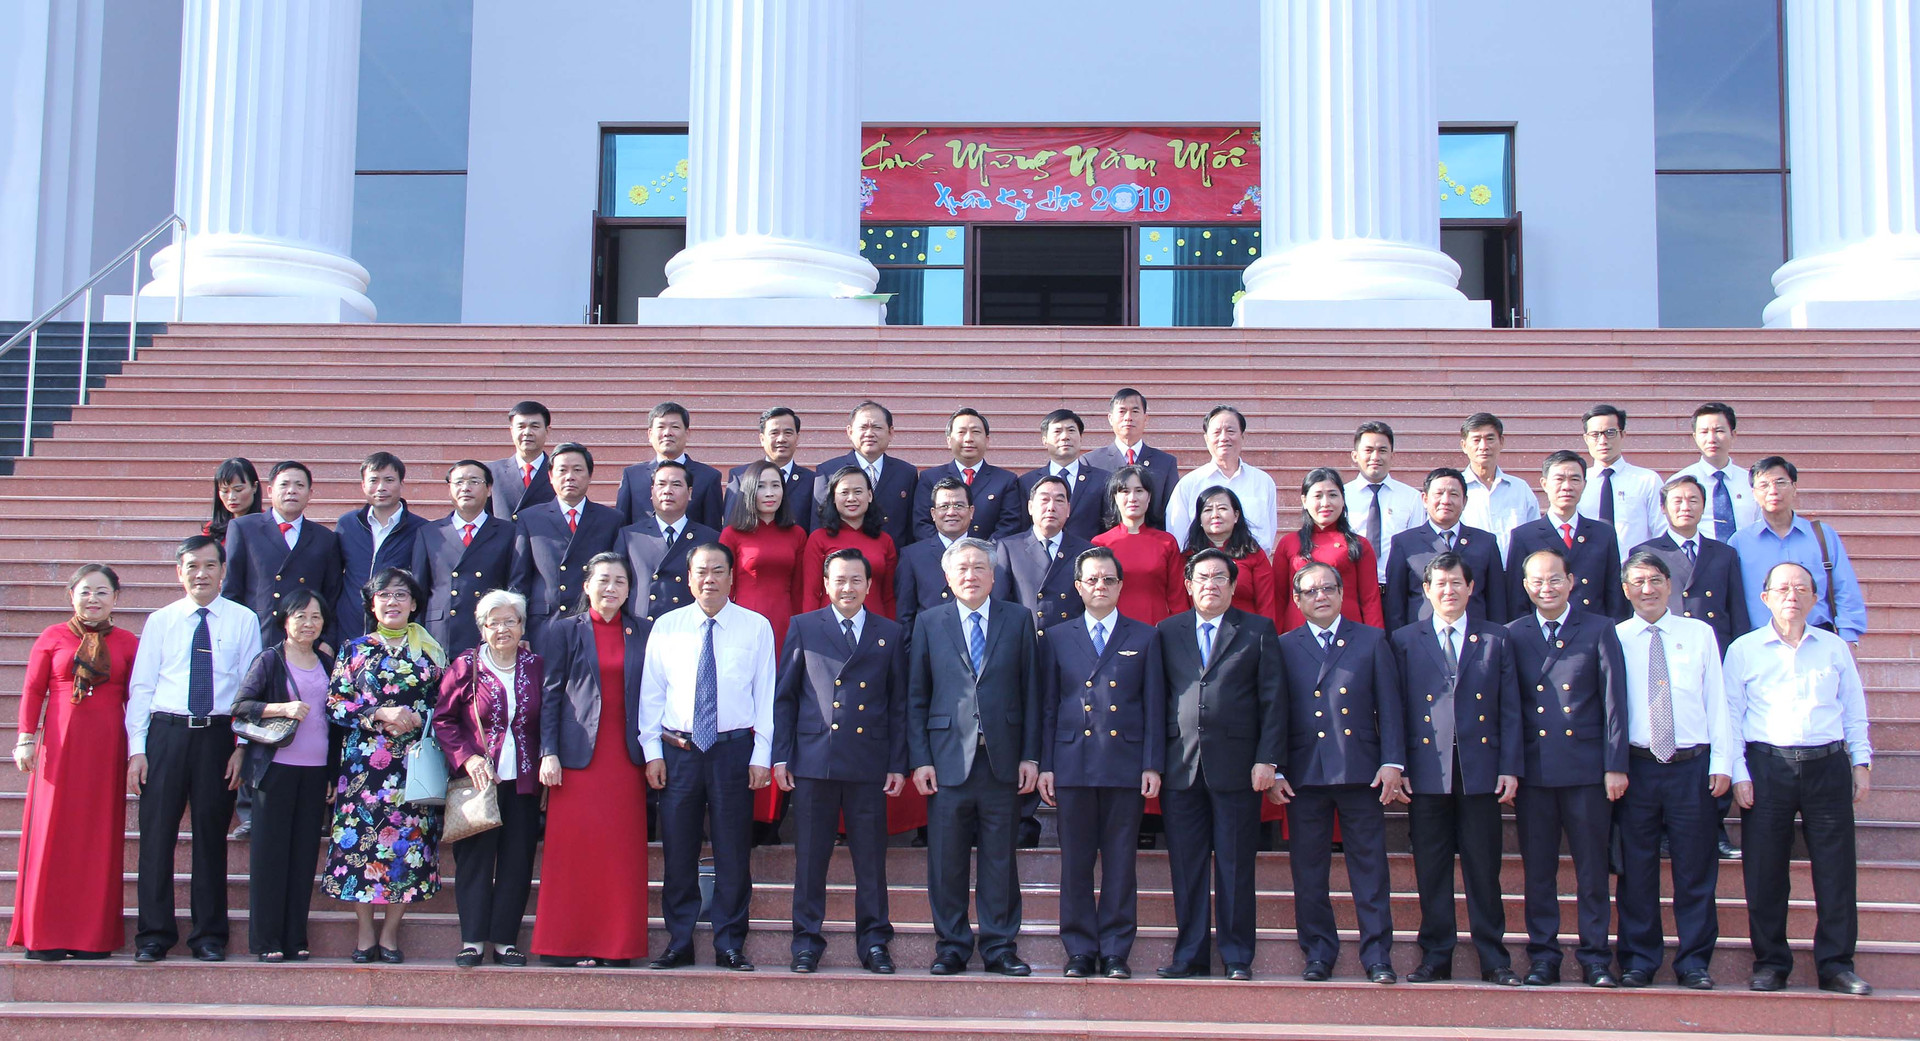 TAND cấp cao tại Tp Hồ Chí Minh triển khai công tác năm 2019